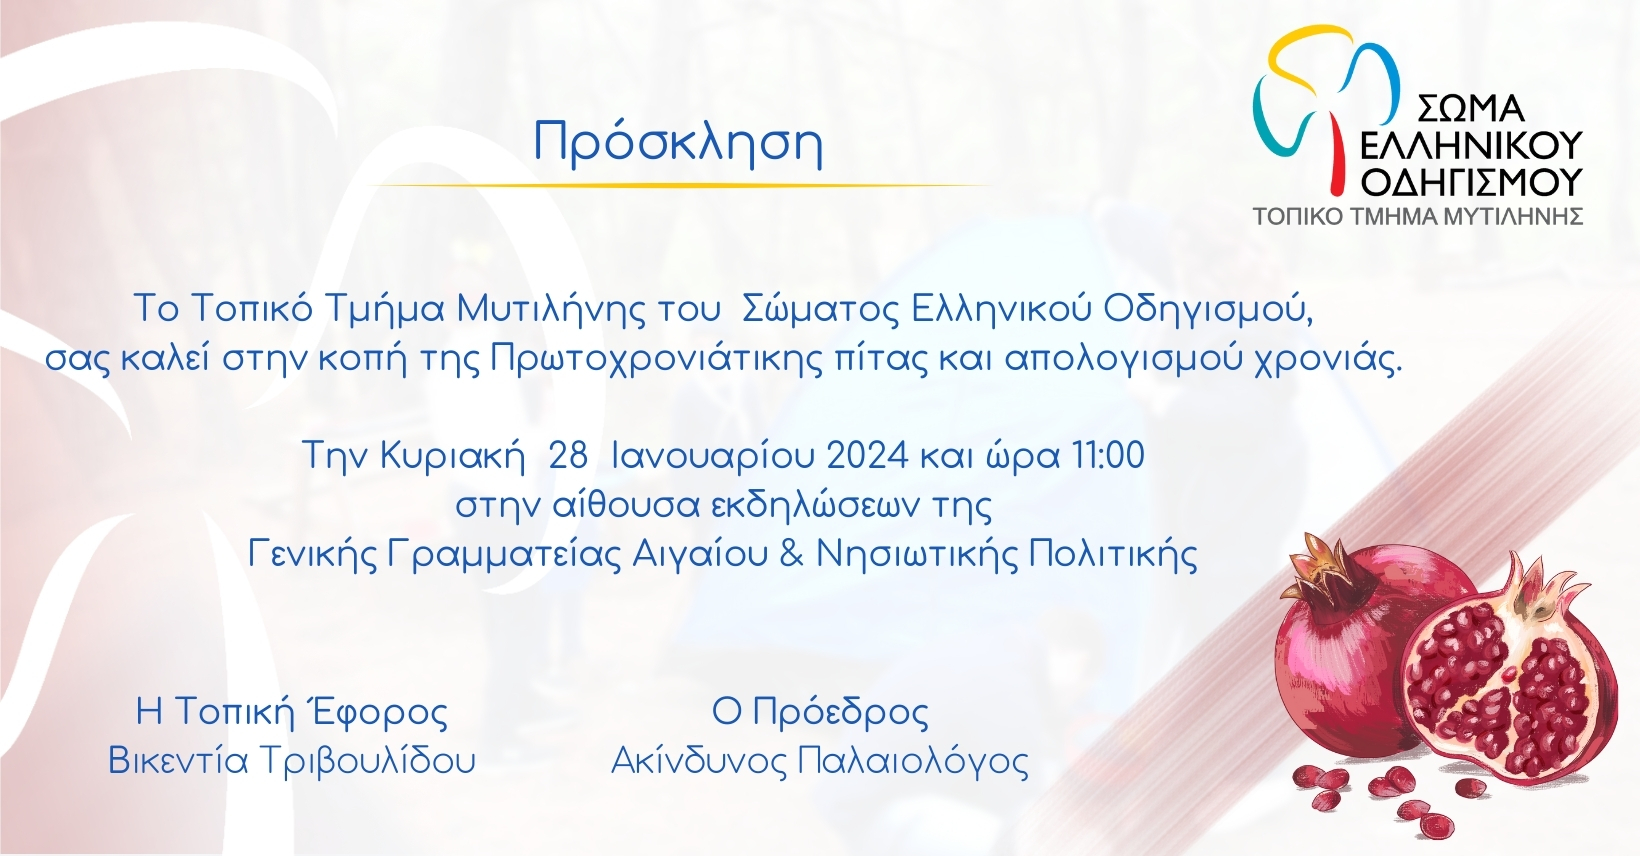 Κοπή πίτας του Σώματος Ελληνικού Οδηγισμού Μυτιλήνης